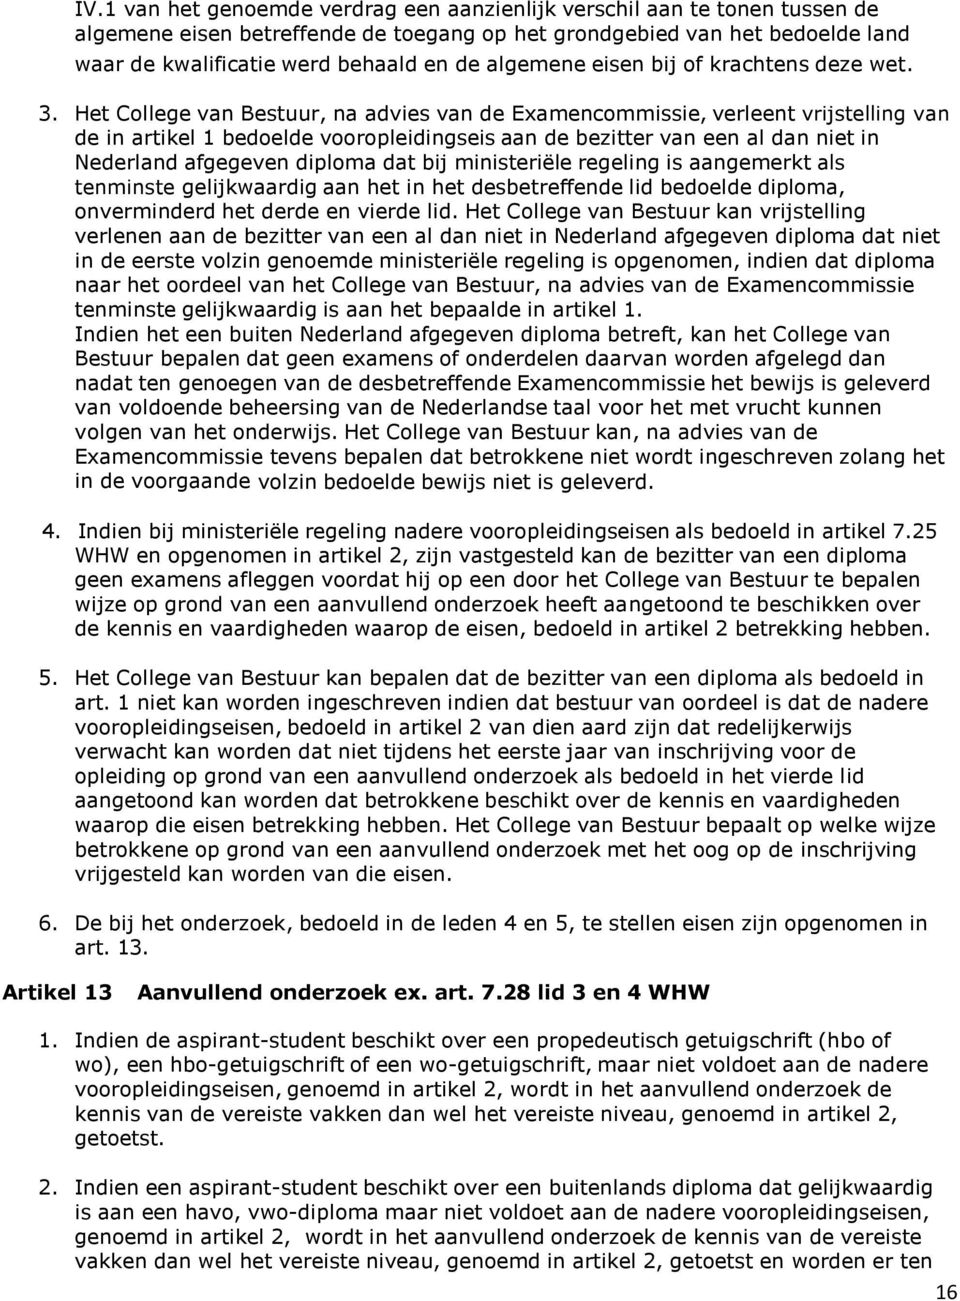 Het College van Bestuur, na advies van de Examencommissie, verleent vrijstelling van de in artikel 1 bedoelde vooropleidingseis aan de bezitter van een al dan niet in Nederland afgegeven diploma dat